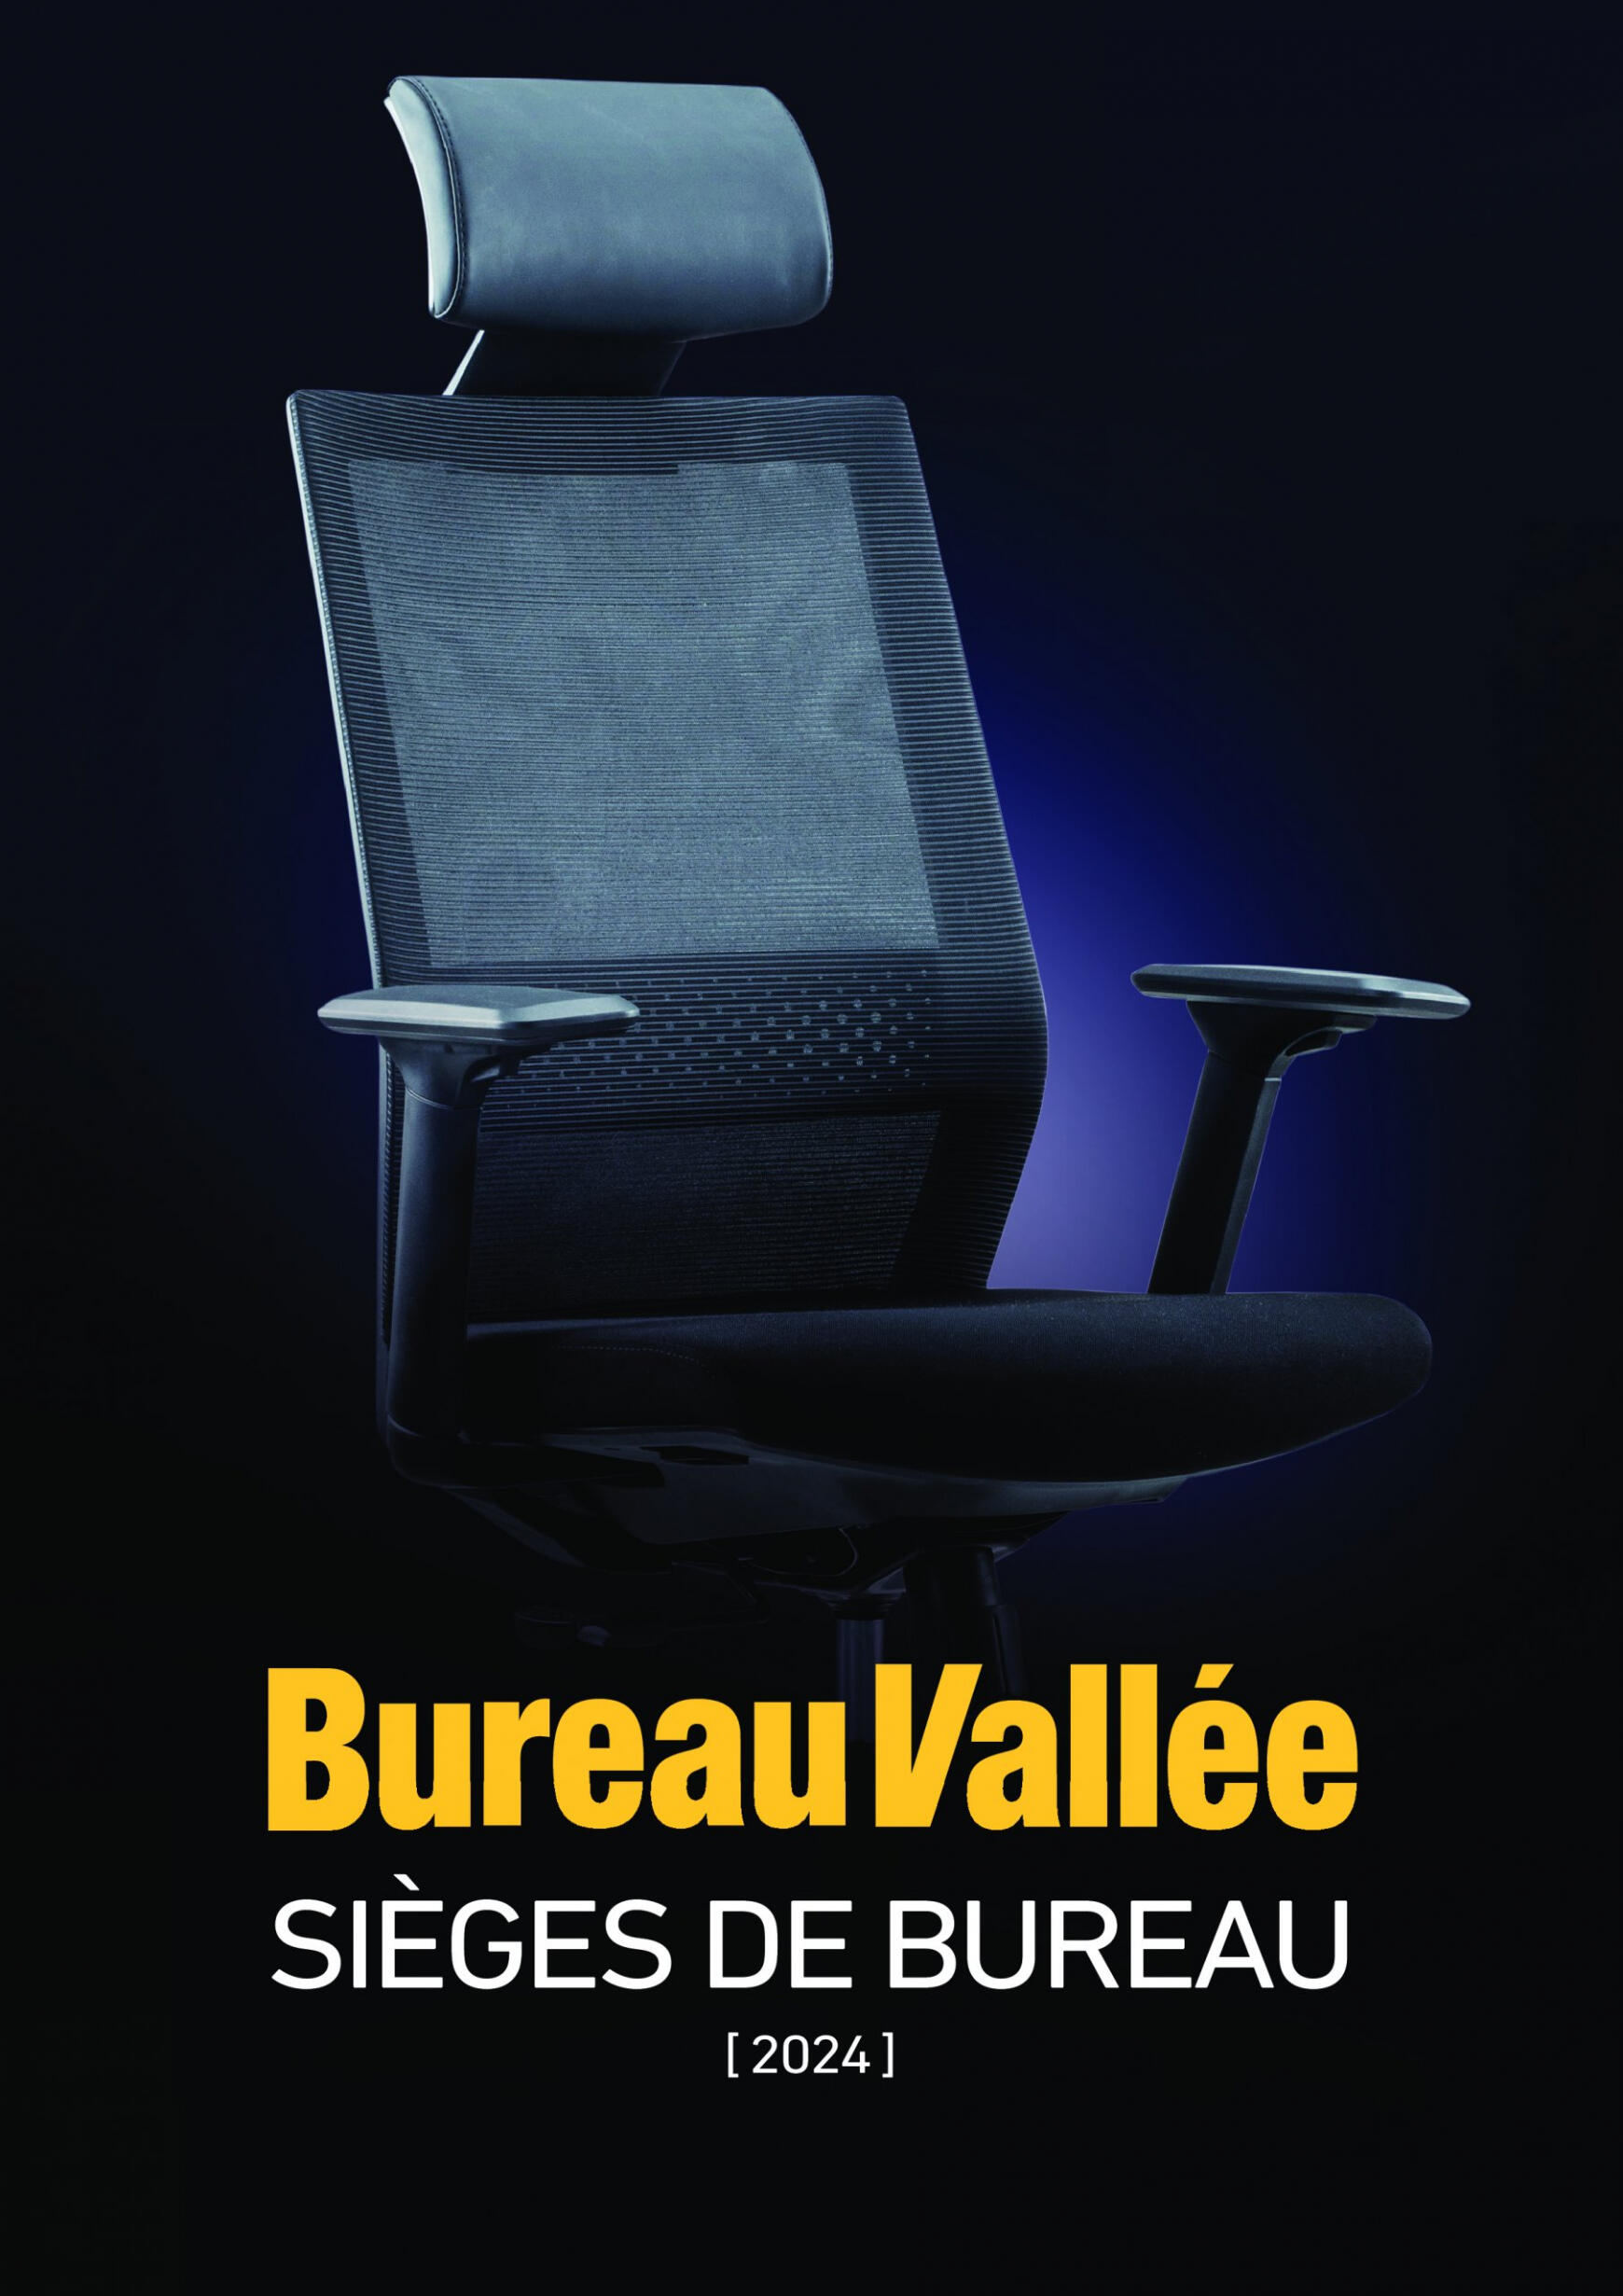 bureau-vallee - Burreau Vallée - SIÈGES DE BUREAU valable à partir de 21.01.2024 - page: 1